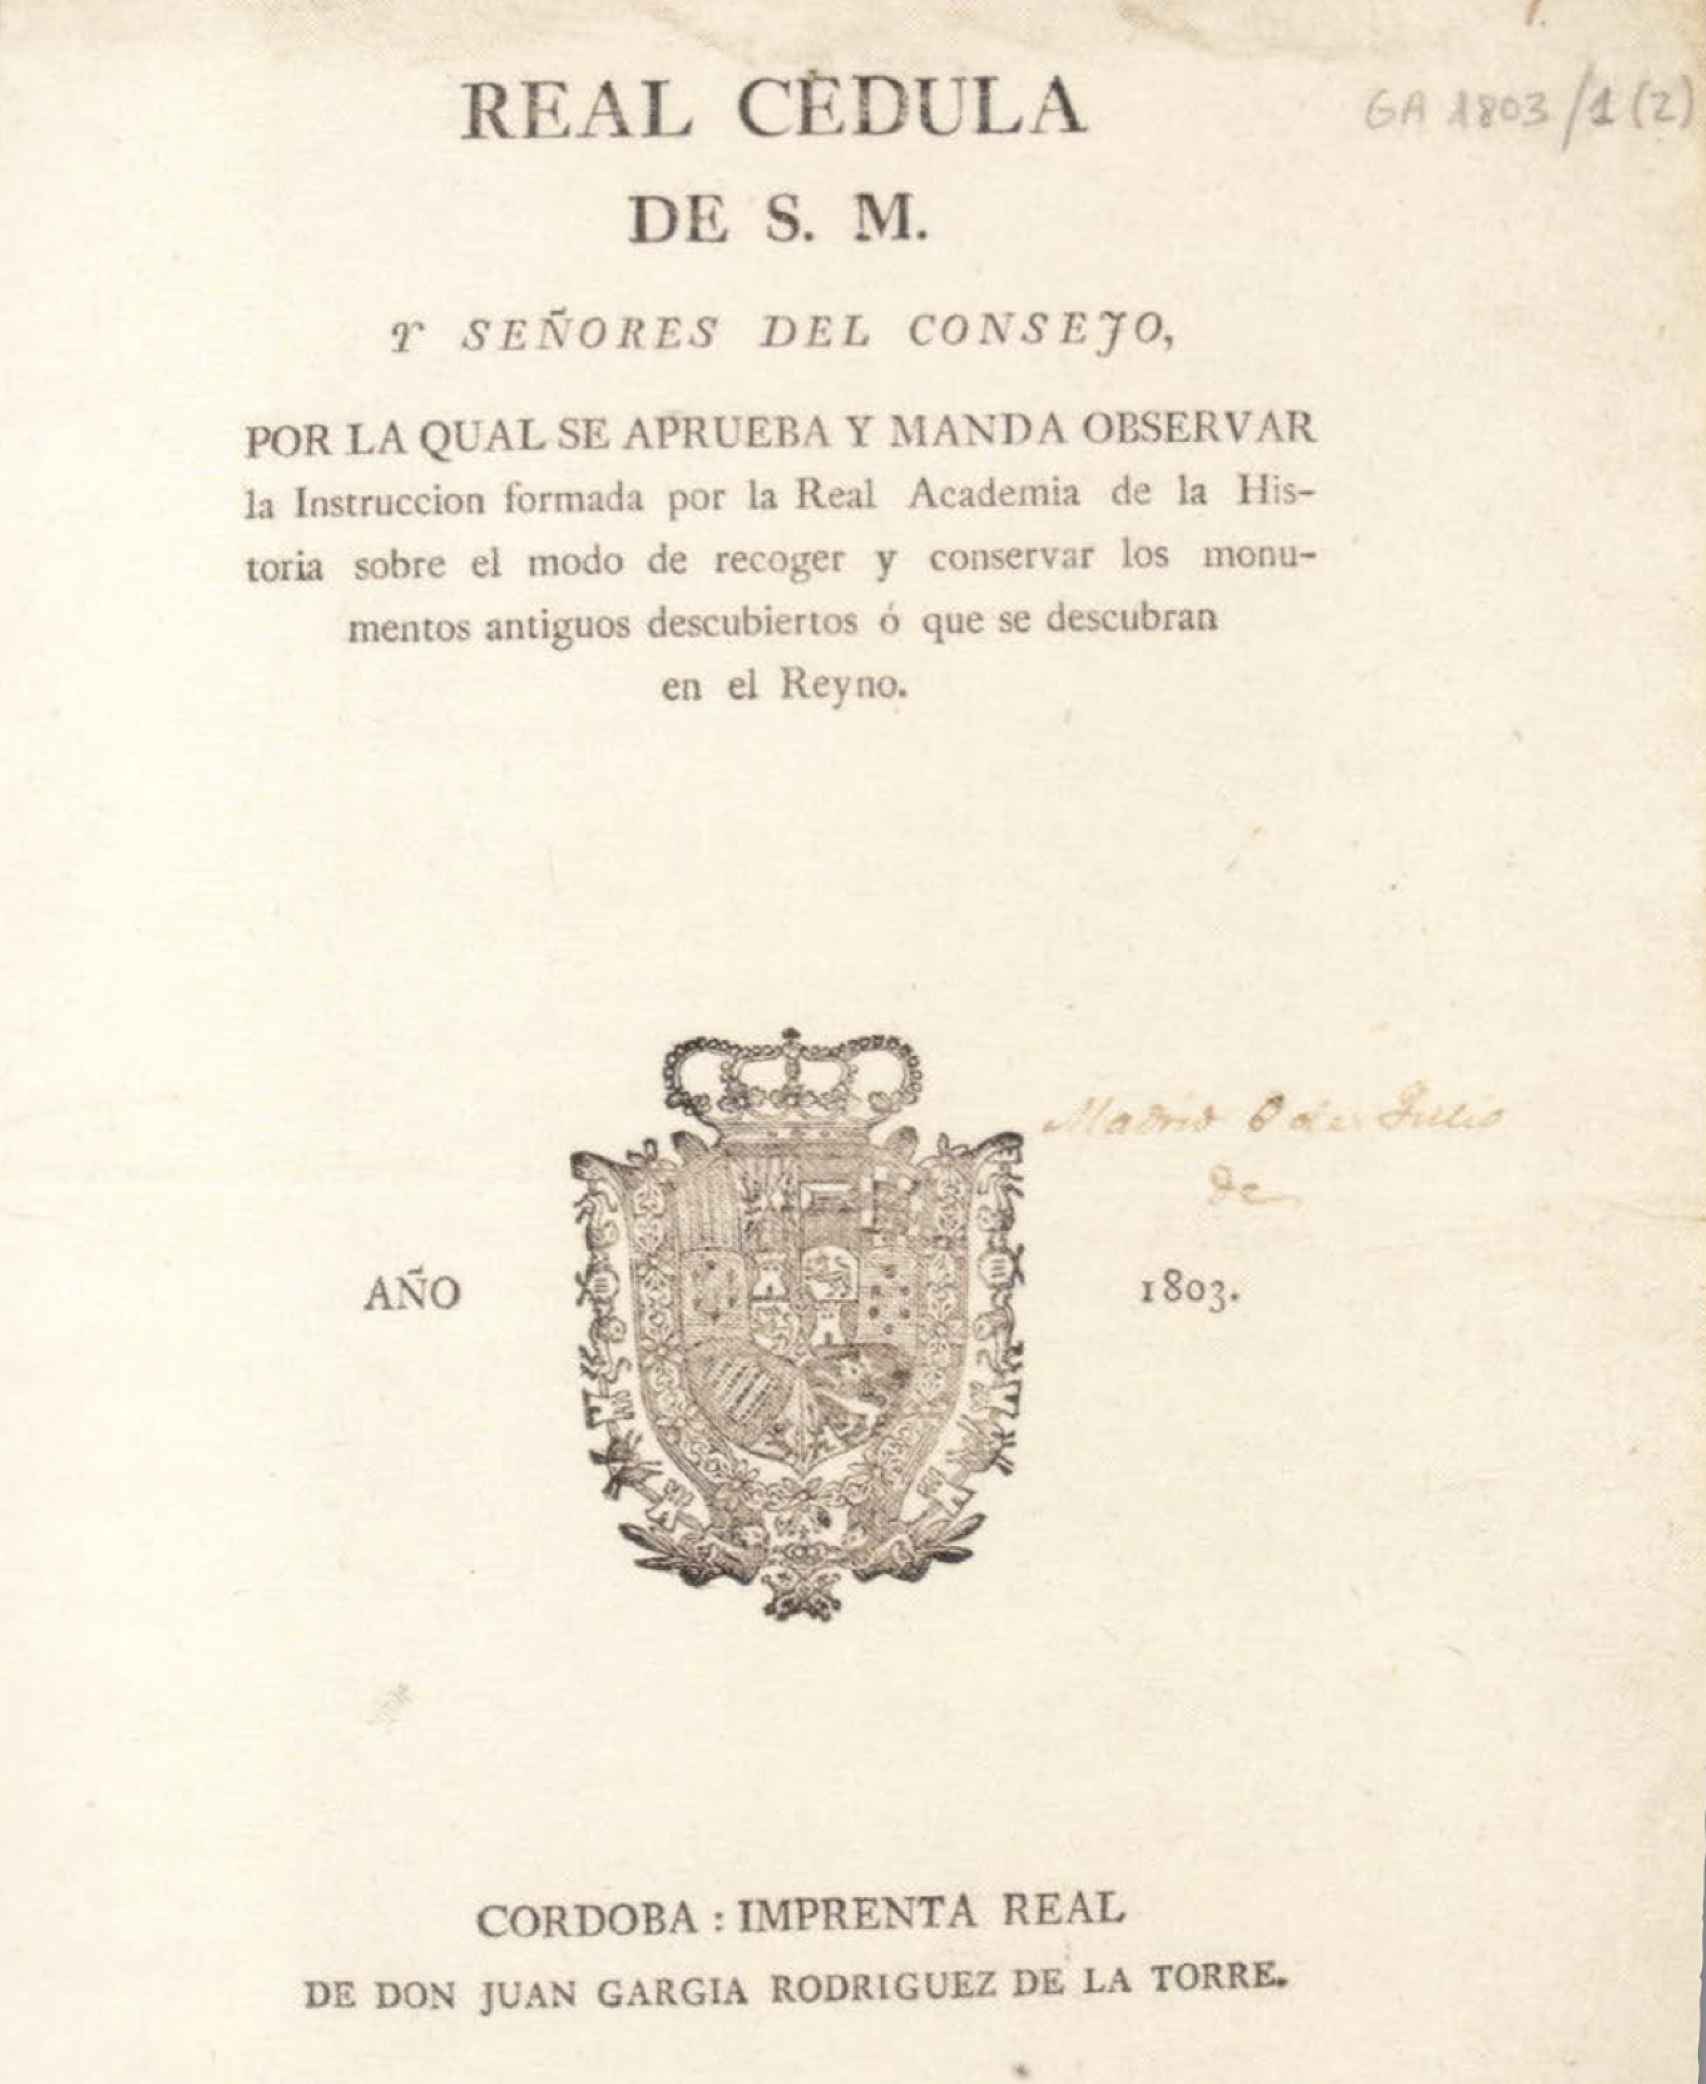 Real Cédula de 1803.